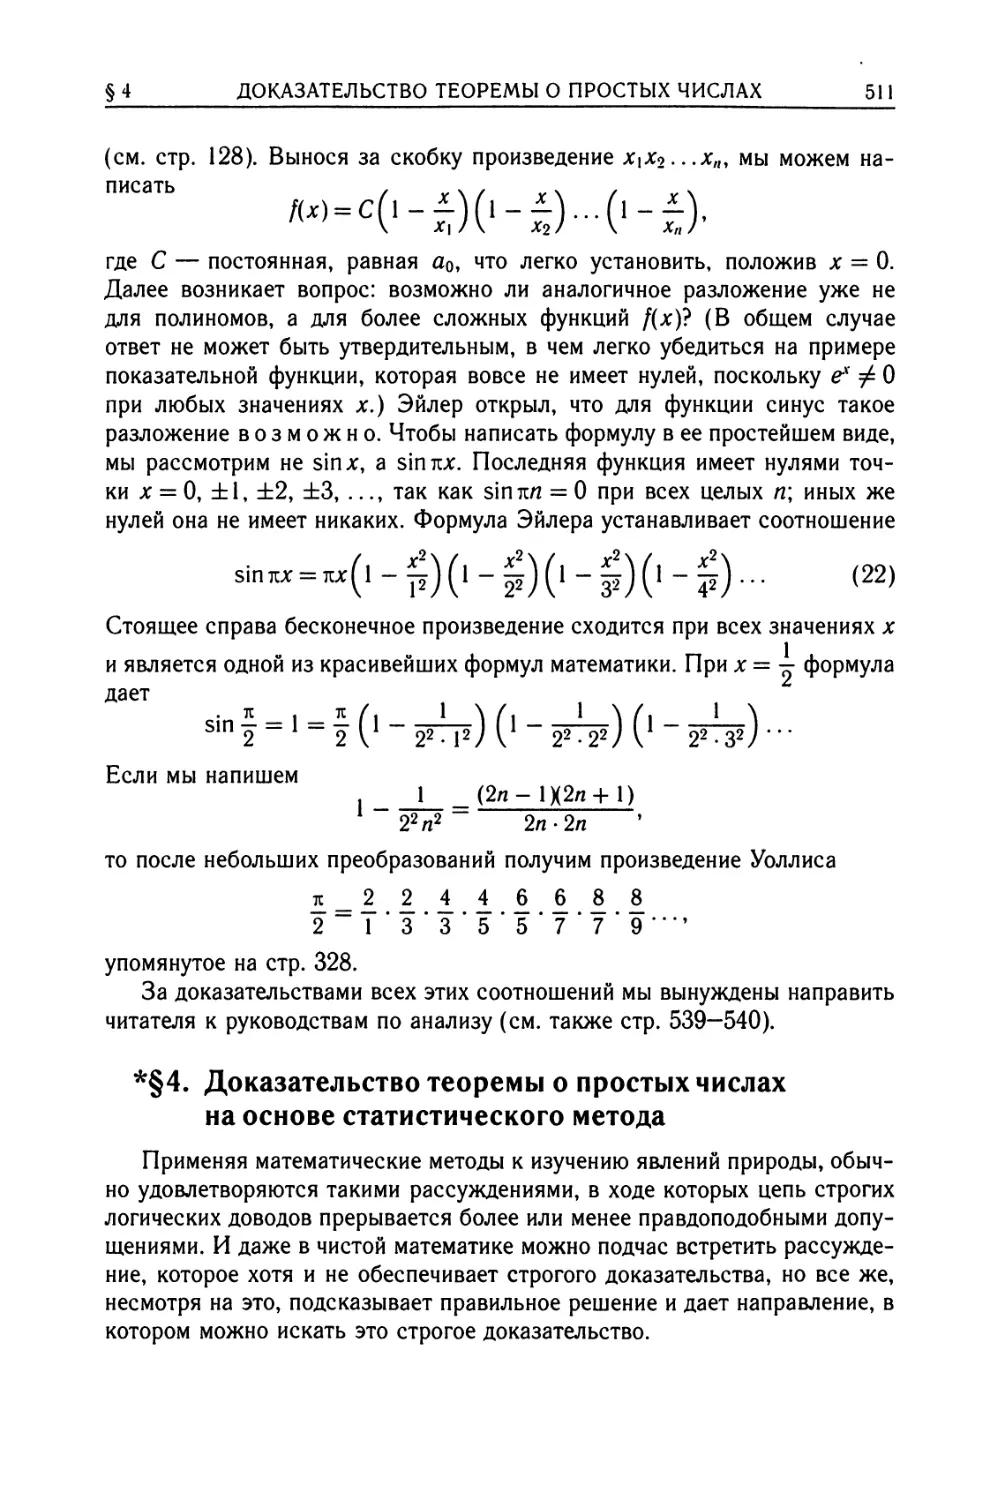 *§ 4. Доказательство теоремы о простых числах на основе статистического метода